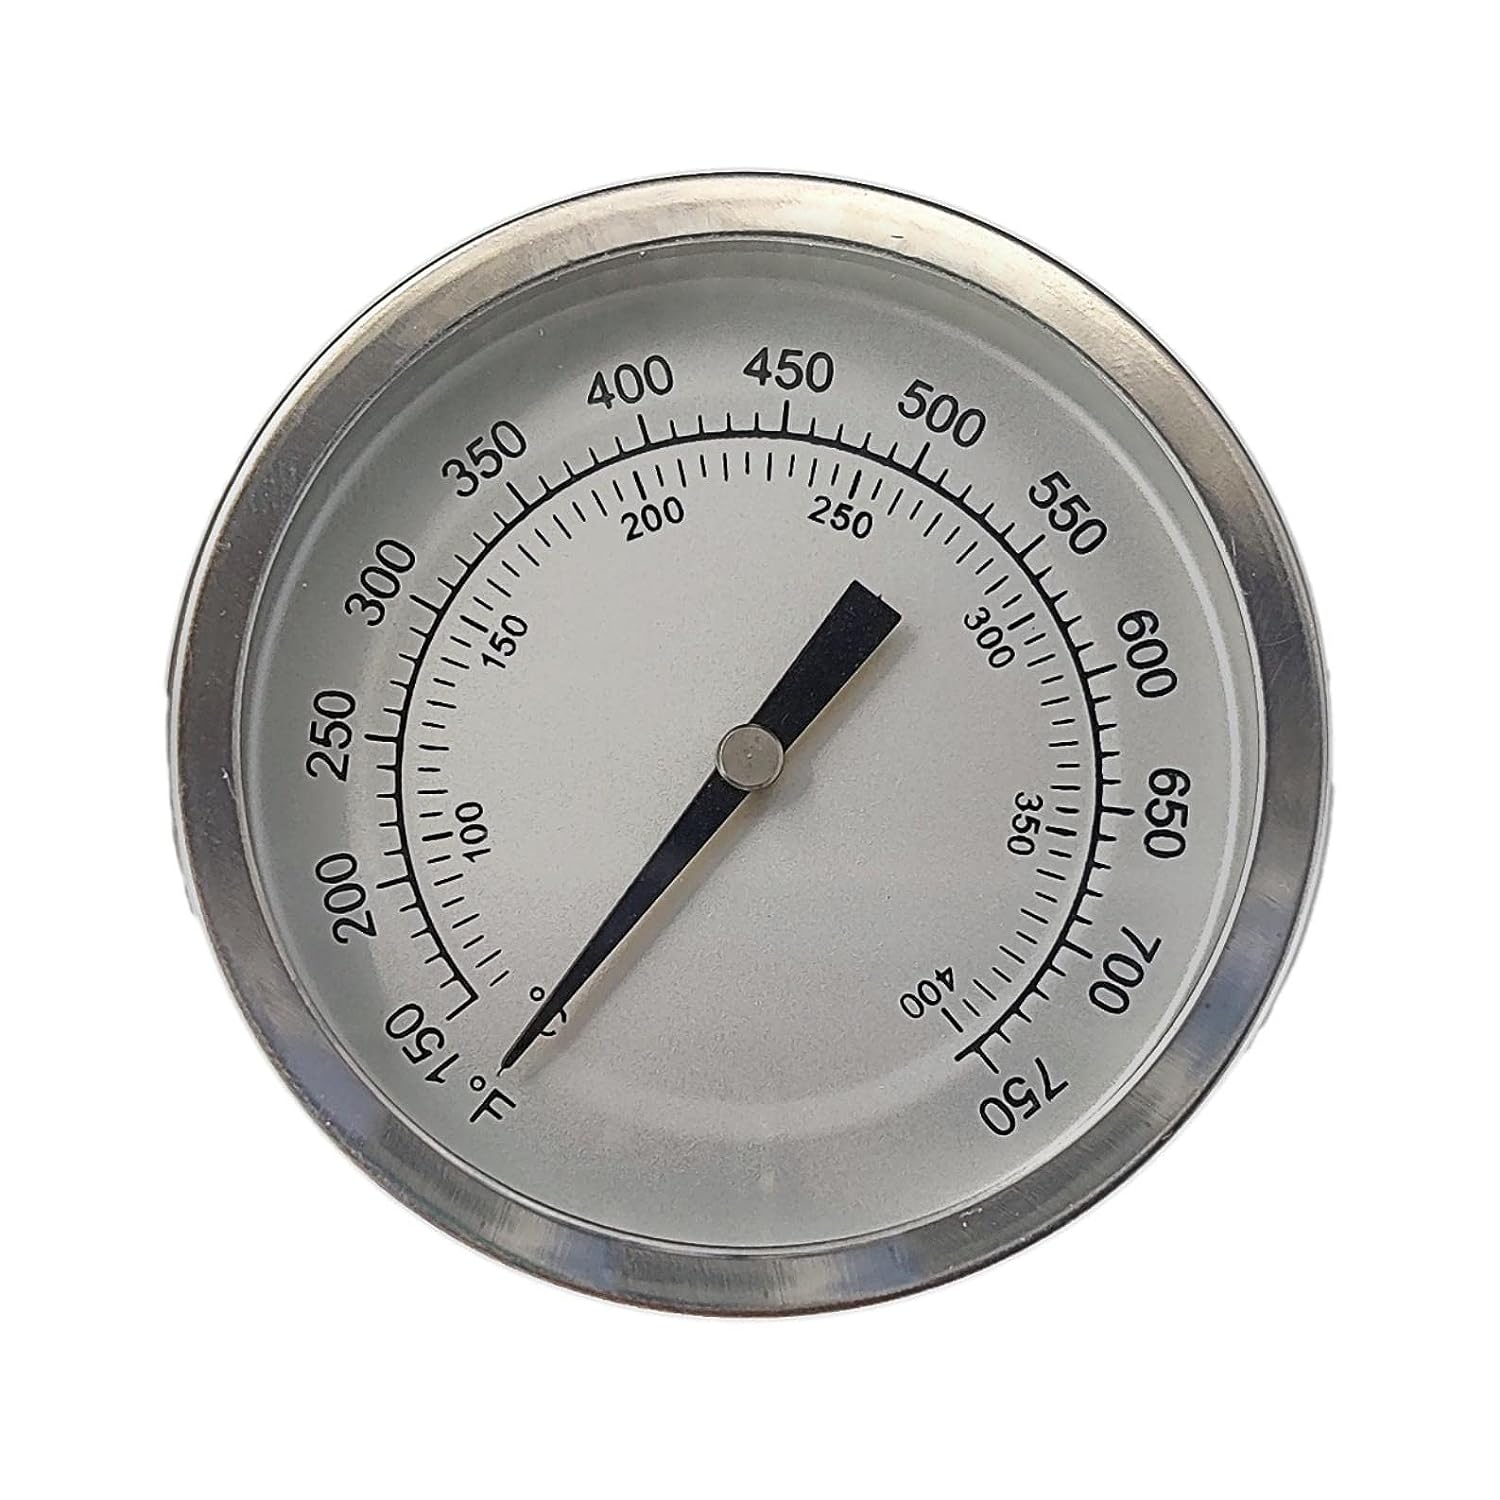 Thermomètre pour Barbecue à pellets Pit Boss